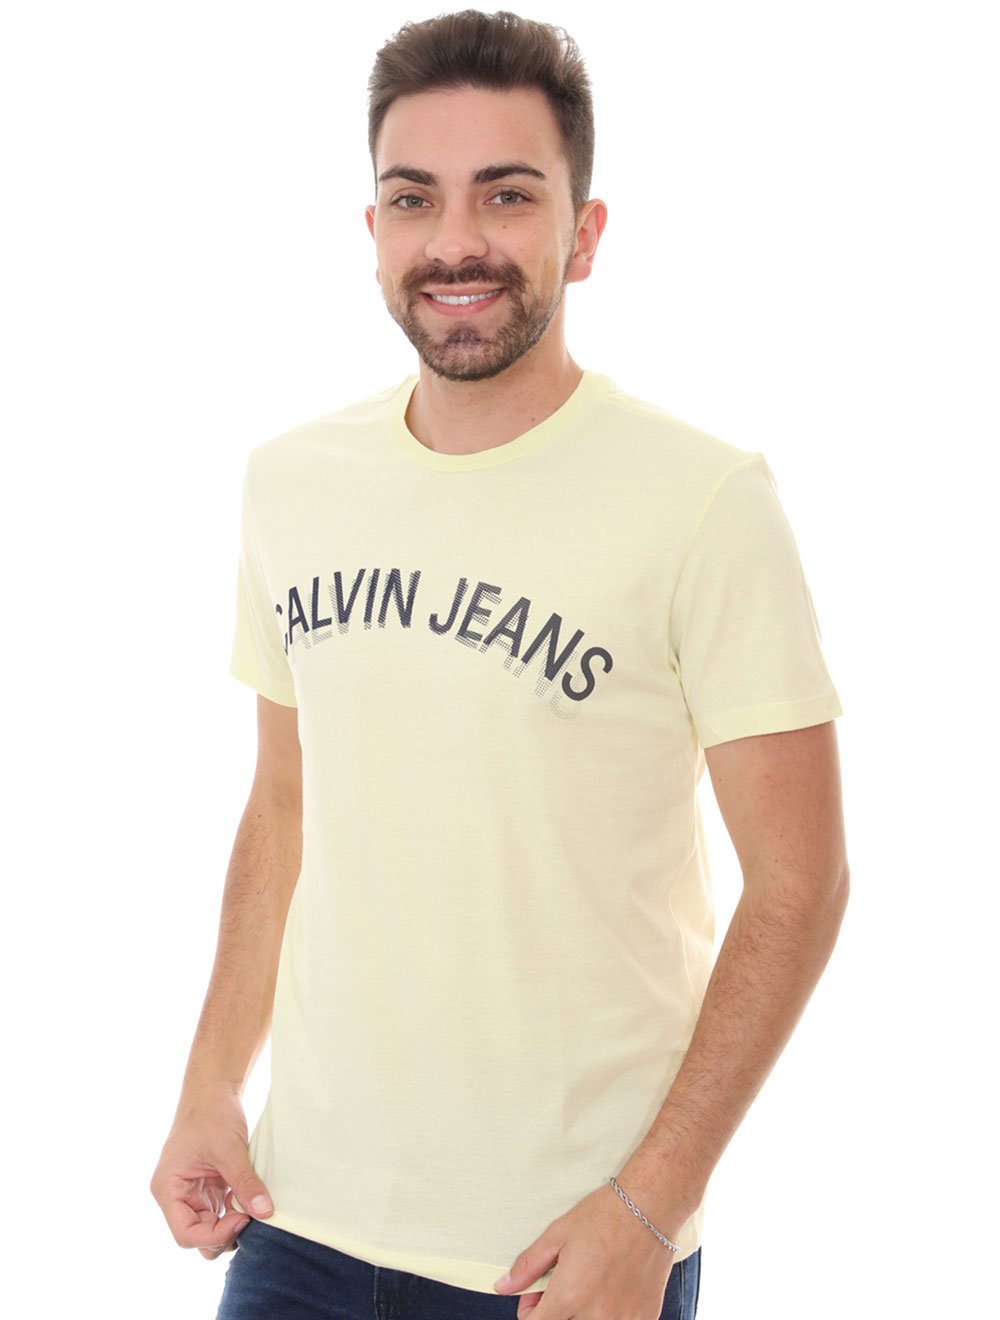 Camiseta Calvin Klein Masculina Meia Malha Dark CK Preta 